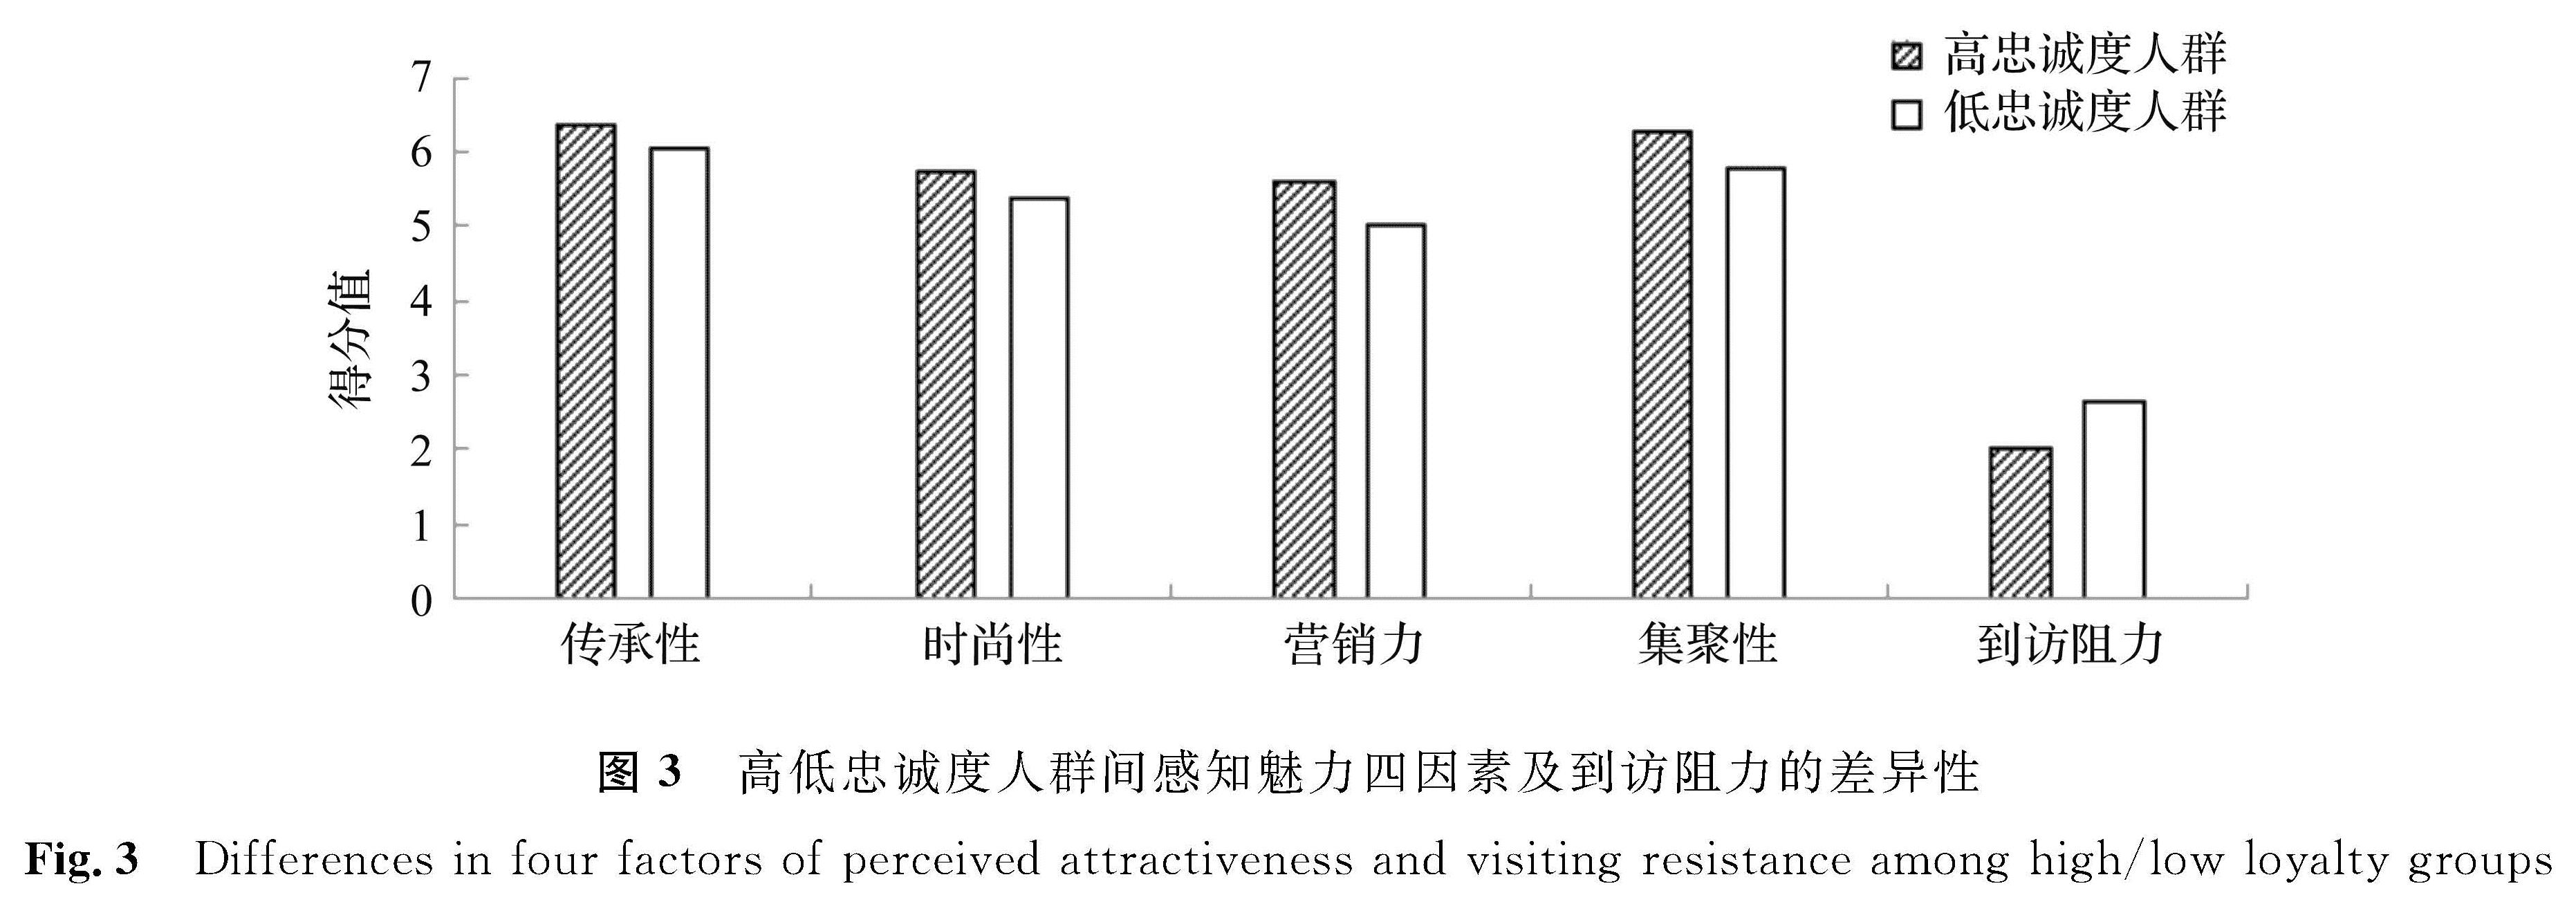 图3 高低忠诚度人群间感知魅力四因素及到访阻力的差异性<br/>Fig.3 Differences in four factors of perceived attractiveness and visiting resistance among high/low loyalty groups